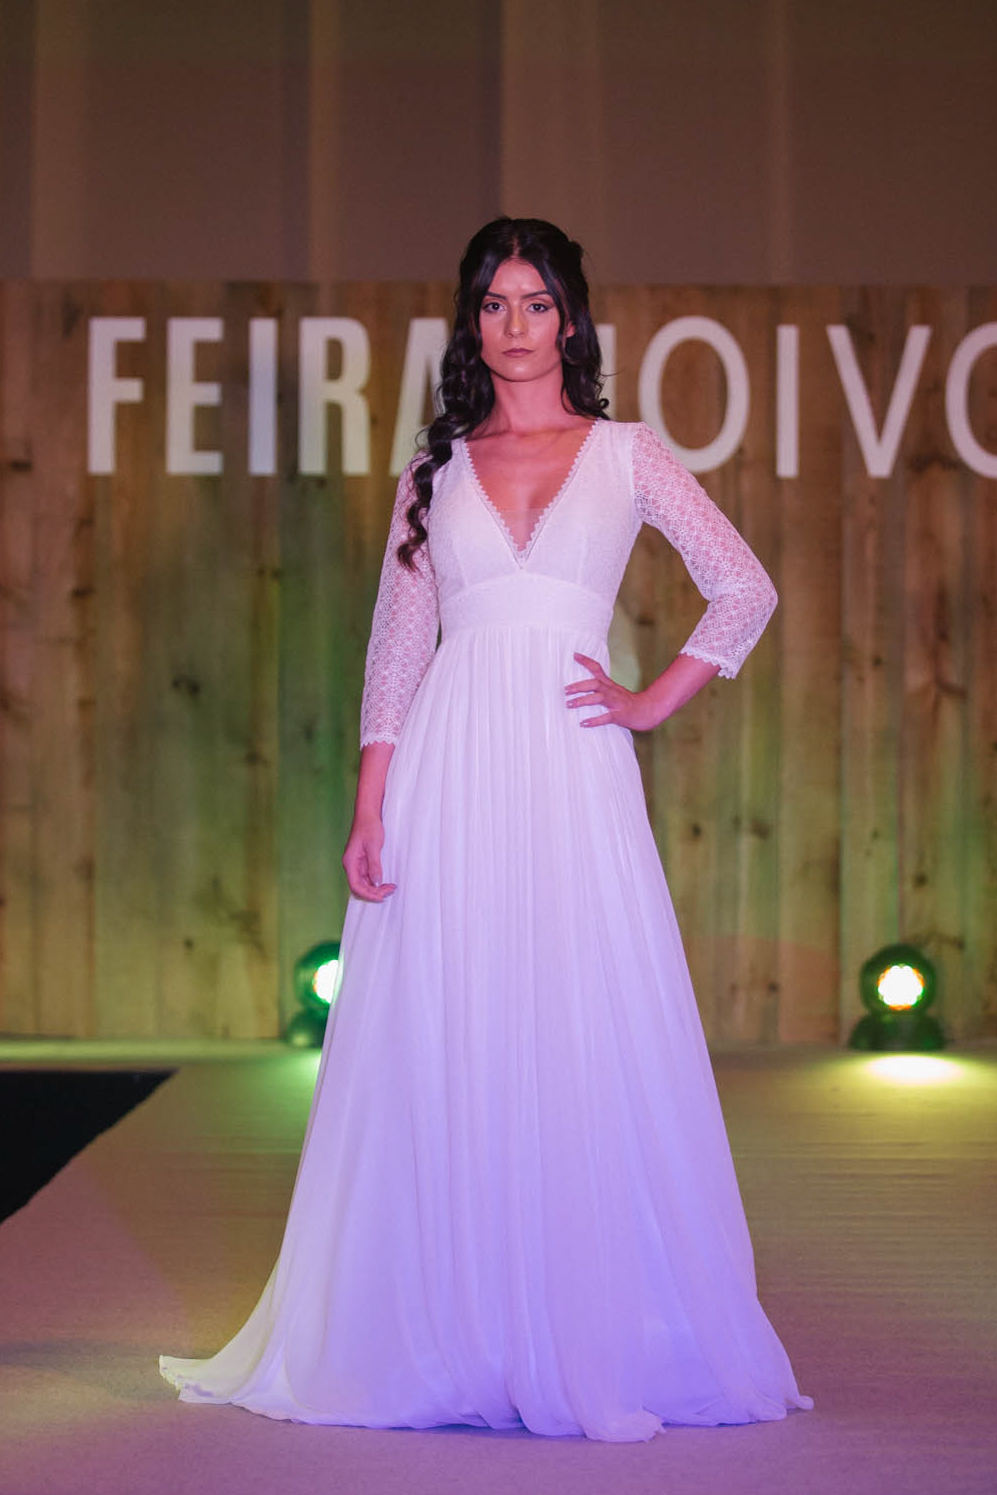 FEIRANOIVOS Wedding & Style